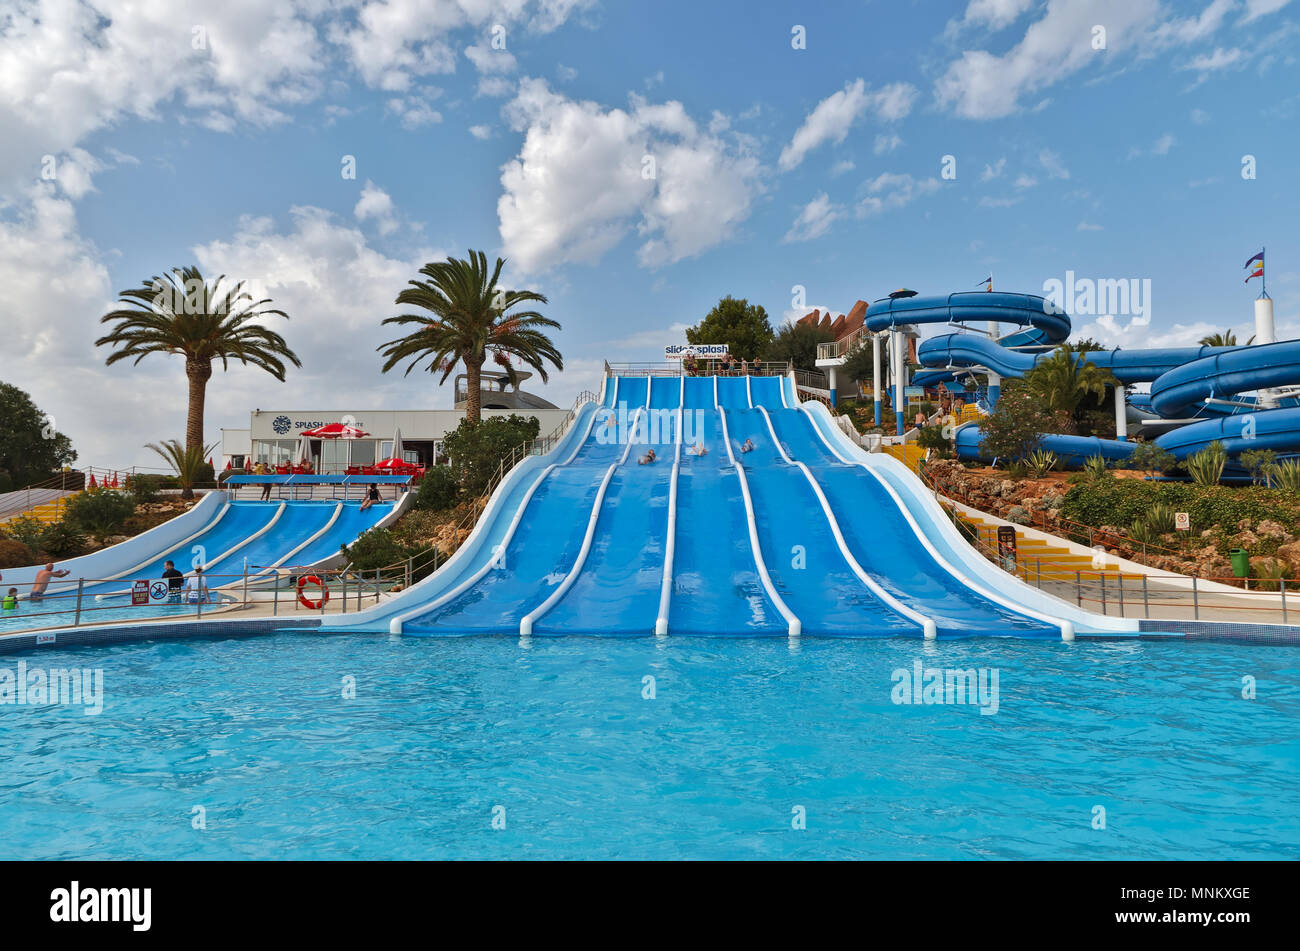 Slide and Splash Water Park in Lagoa, Algarve, Portugal Stock Photo